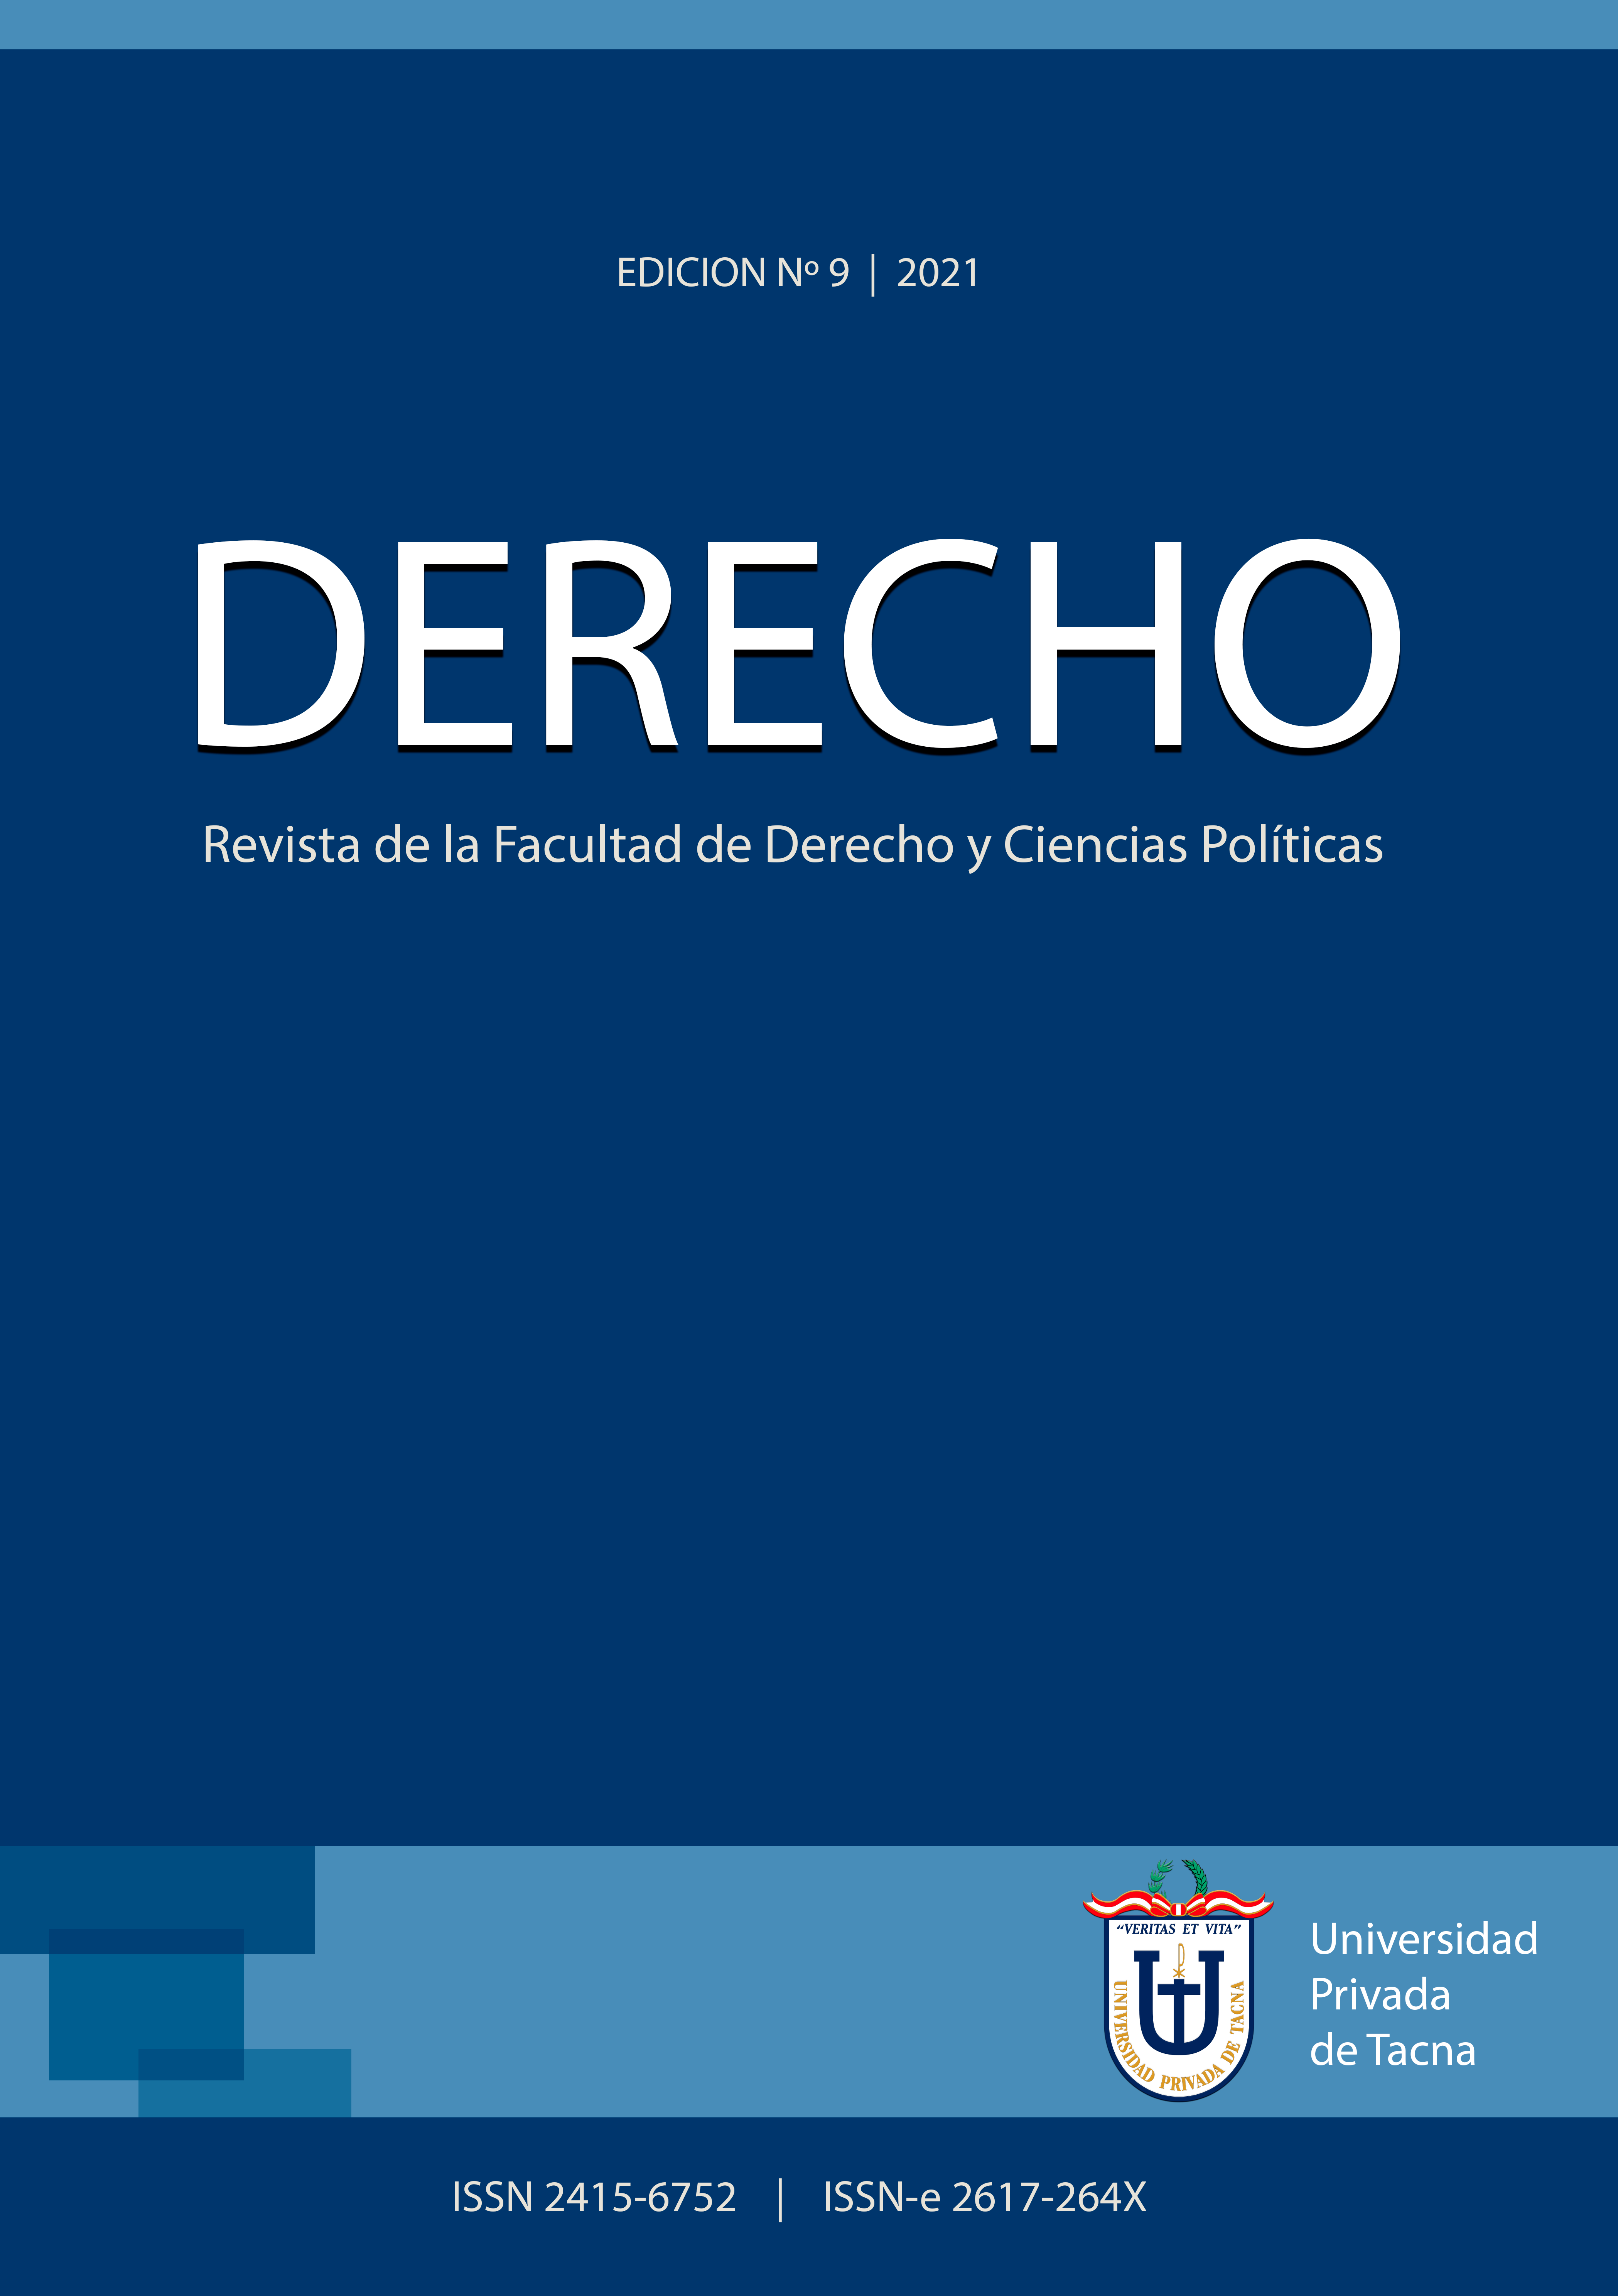 					Ver Vol. 9 Núm. 9 (2021): DERECHO: Revista de la Facultad de Derecho y Ciencias Políticas
				